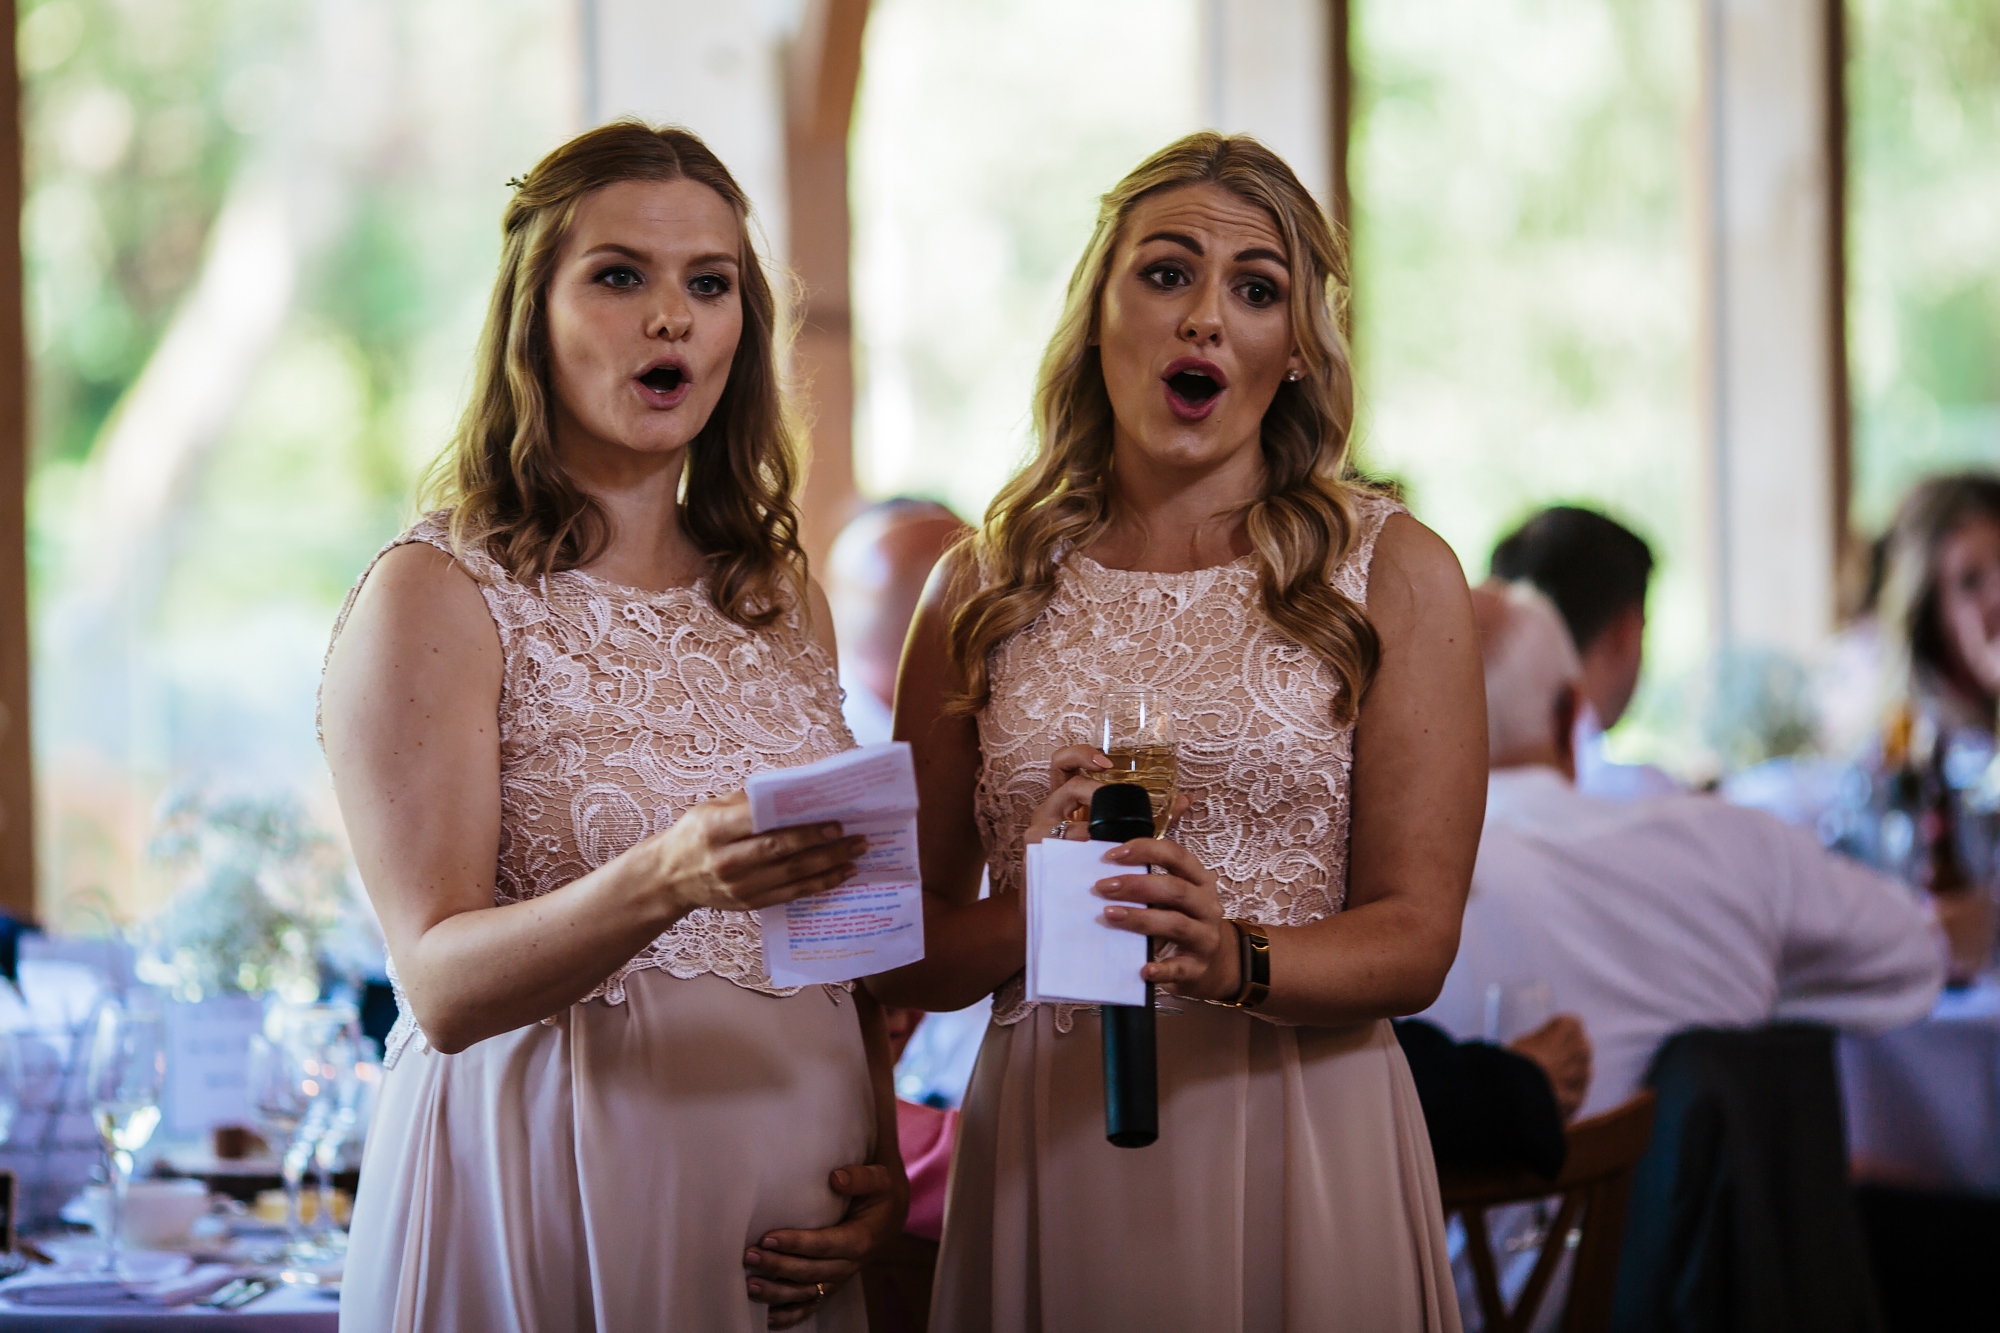 Singing bridesmaids at a wedding in Shropshire